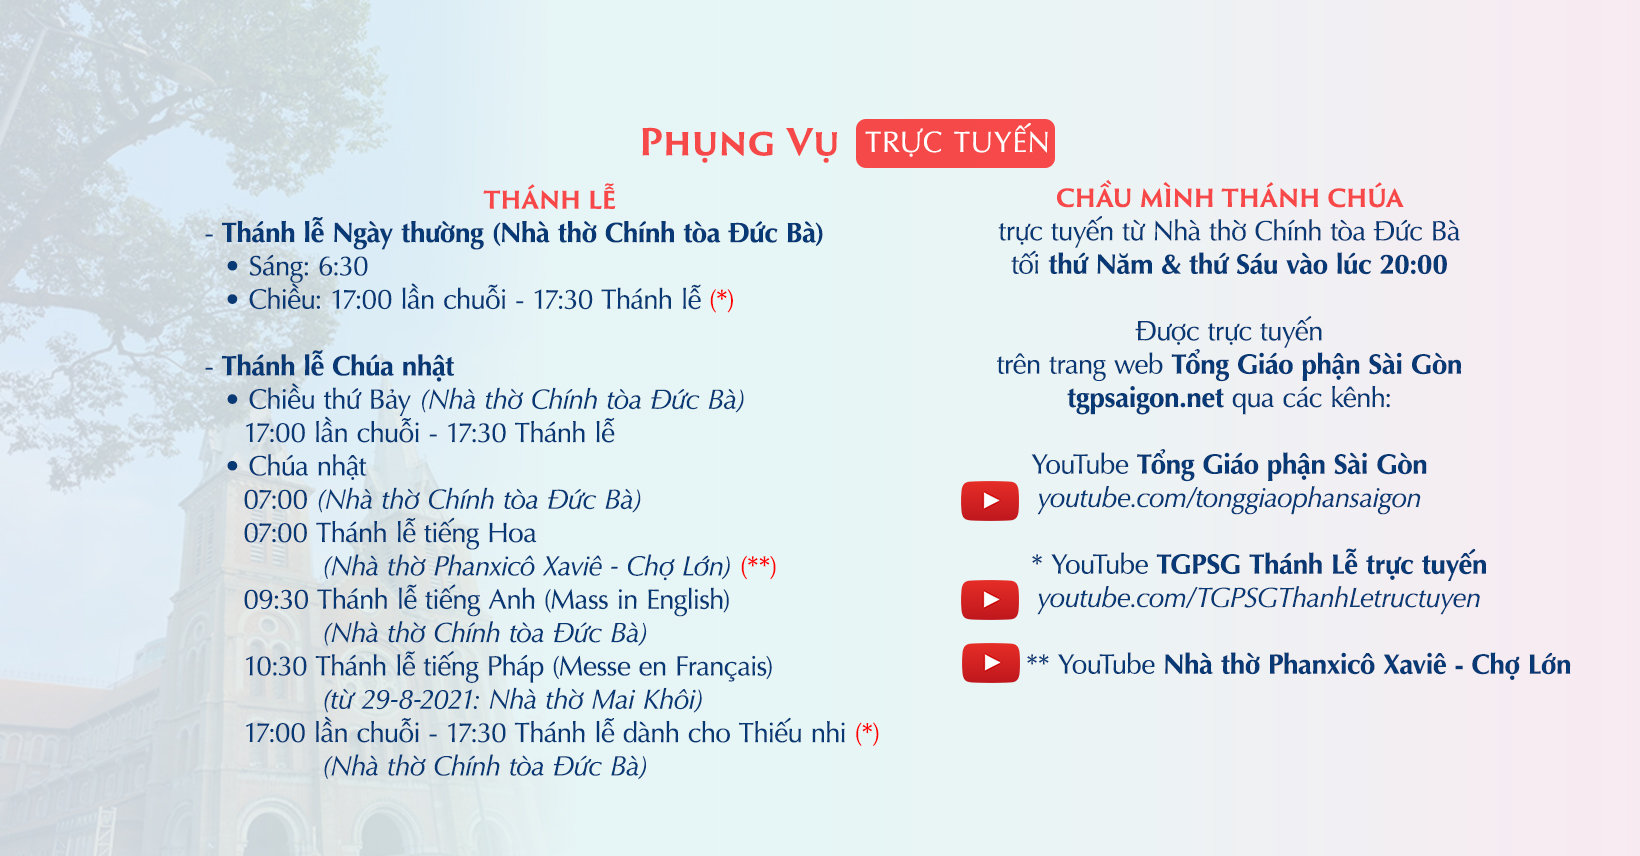 Tổng Giáo phận Sài Gòn: Phụng vụ trực tuyến từ 27-9-2021 đến 2-10-2021